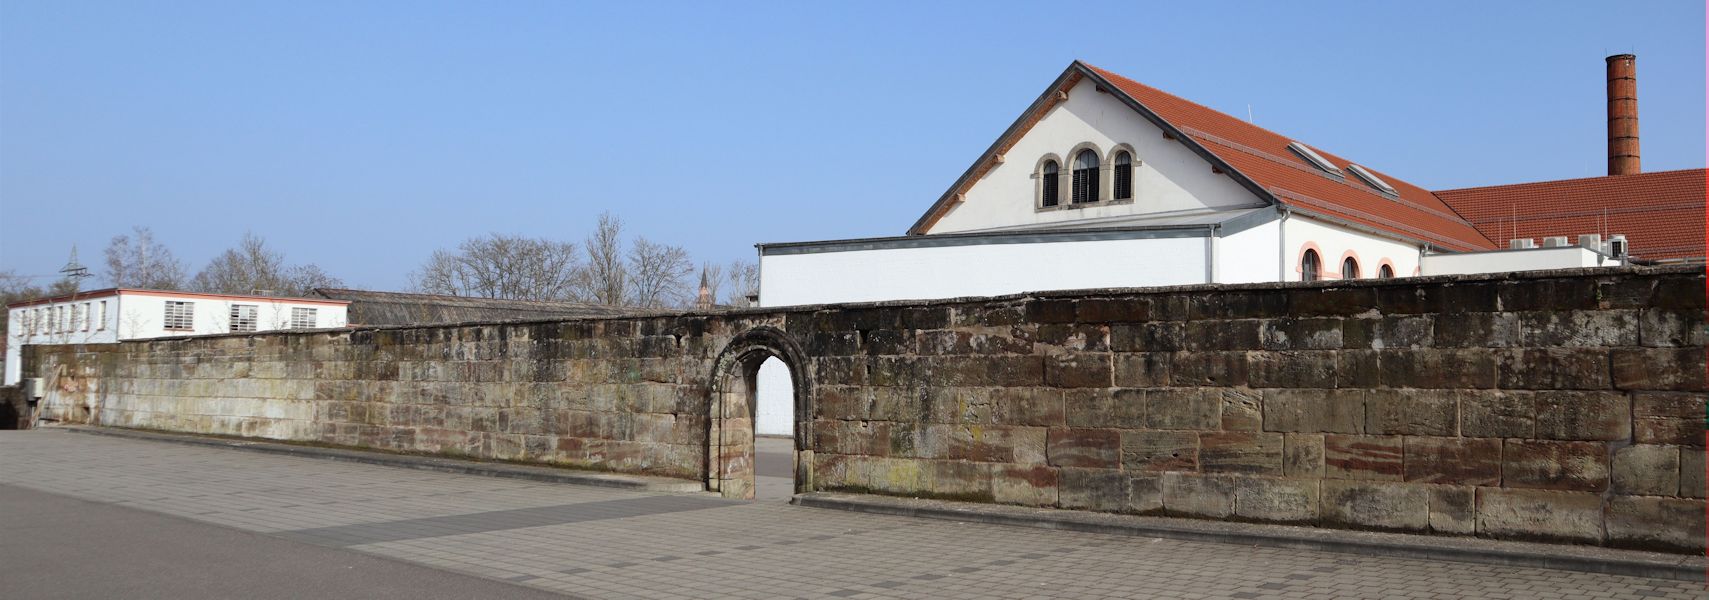 Mauer - letzter Rest des Klosters der Prämonstratenser in Wadgassen